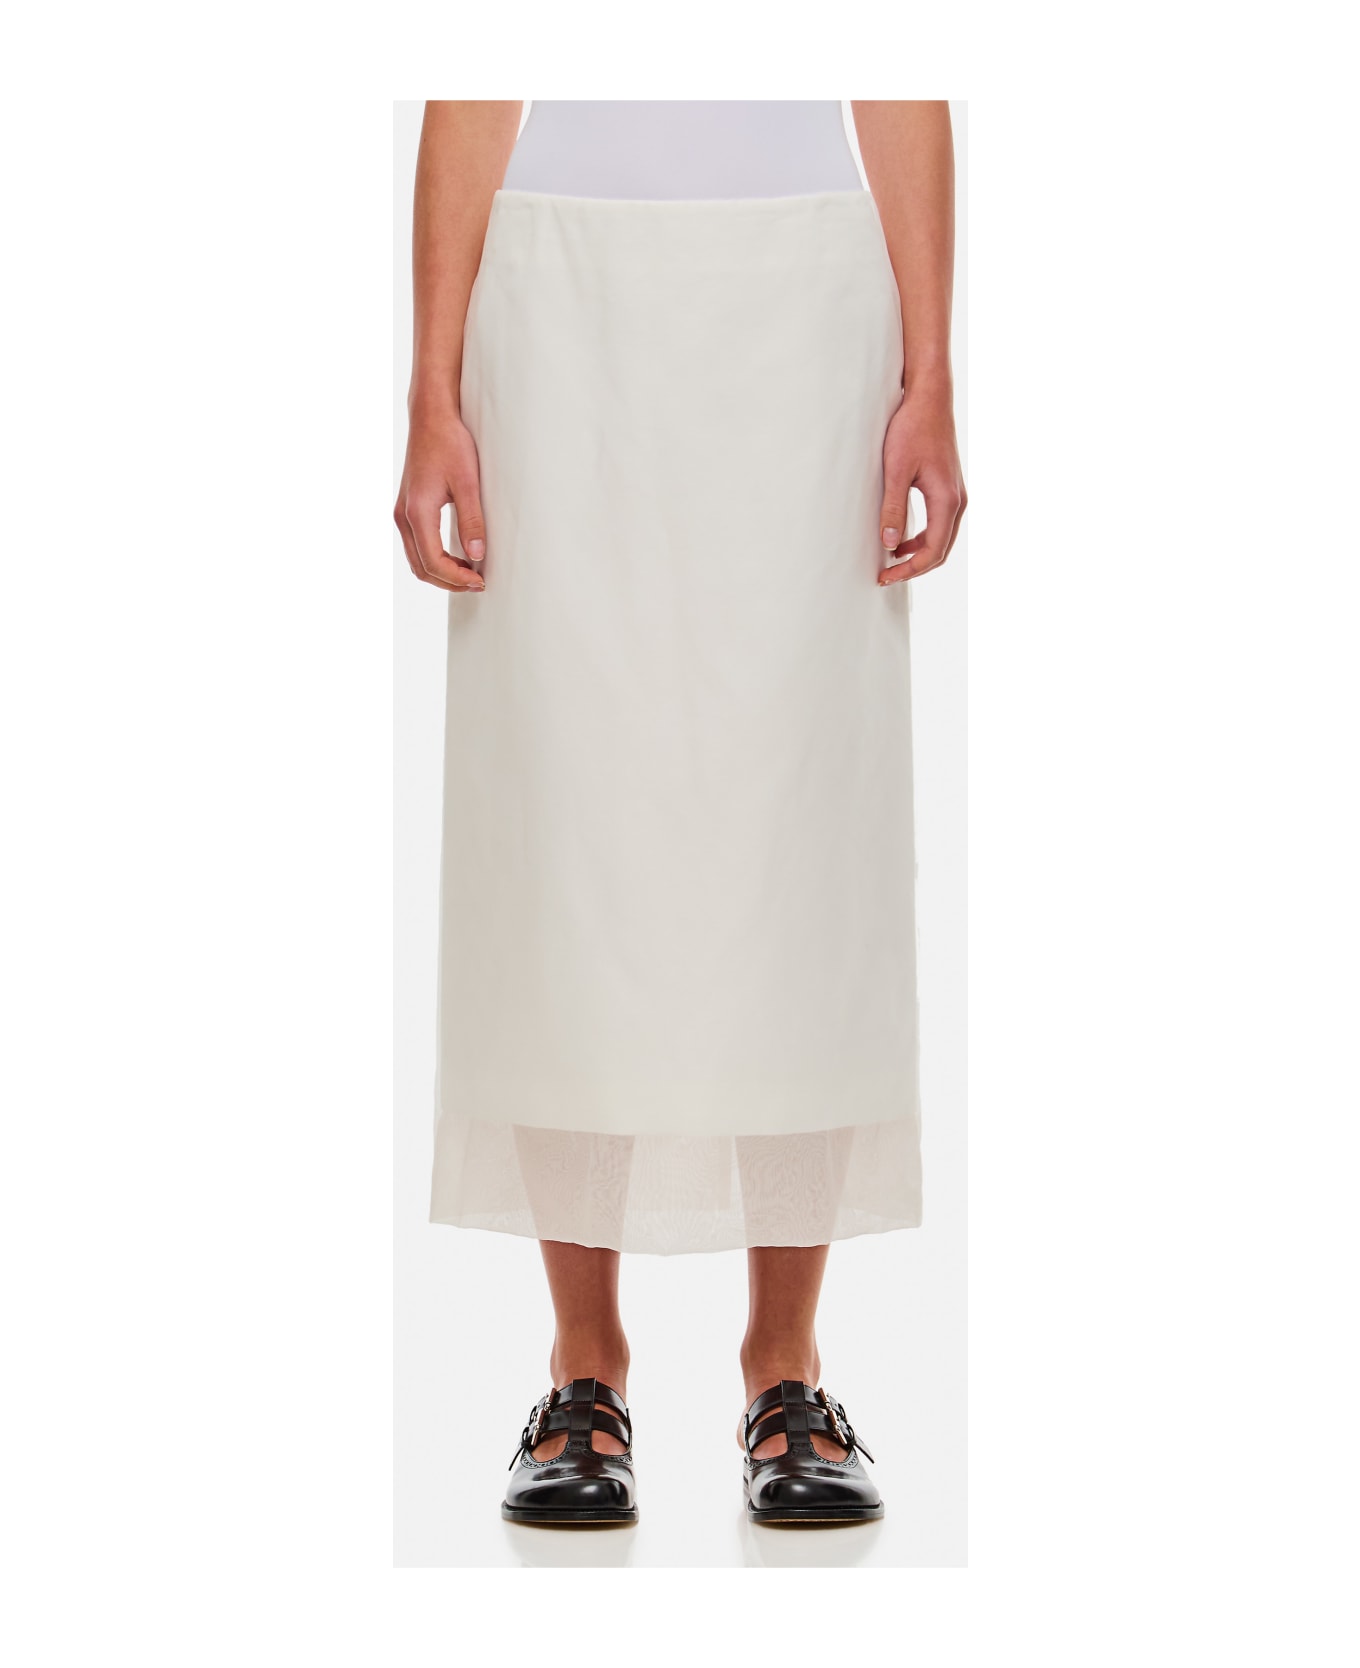 SportMax Aceti Skirt - WHITE スカート